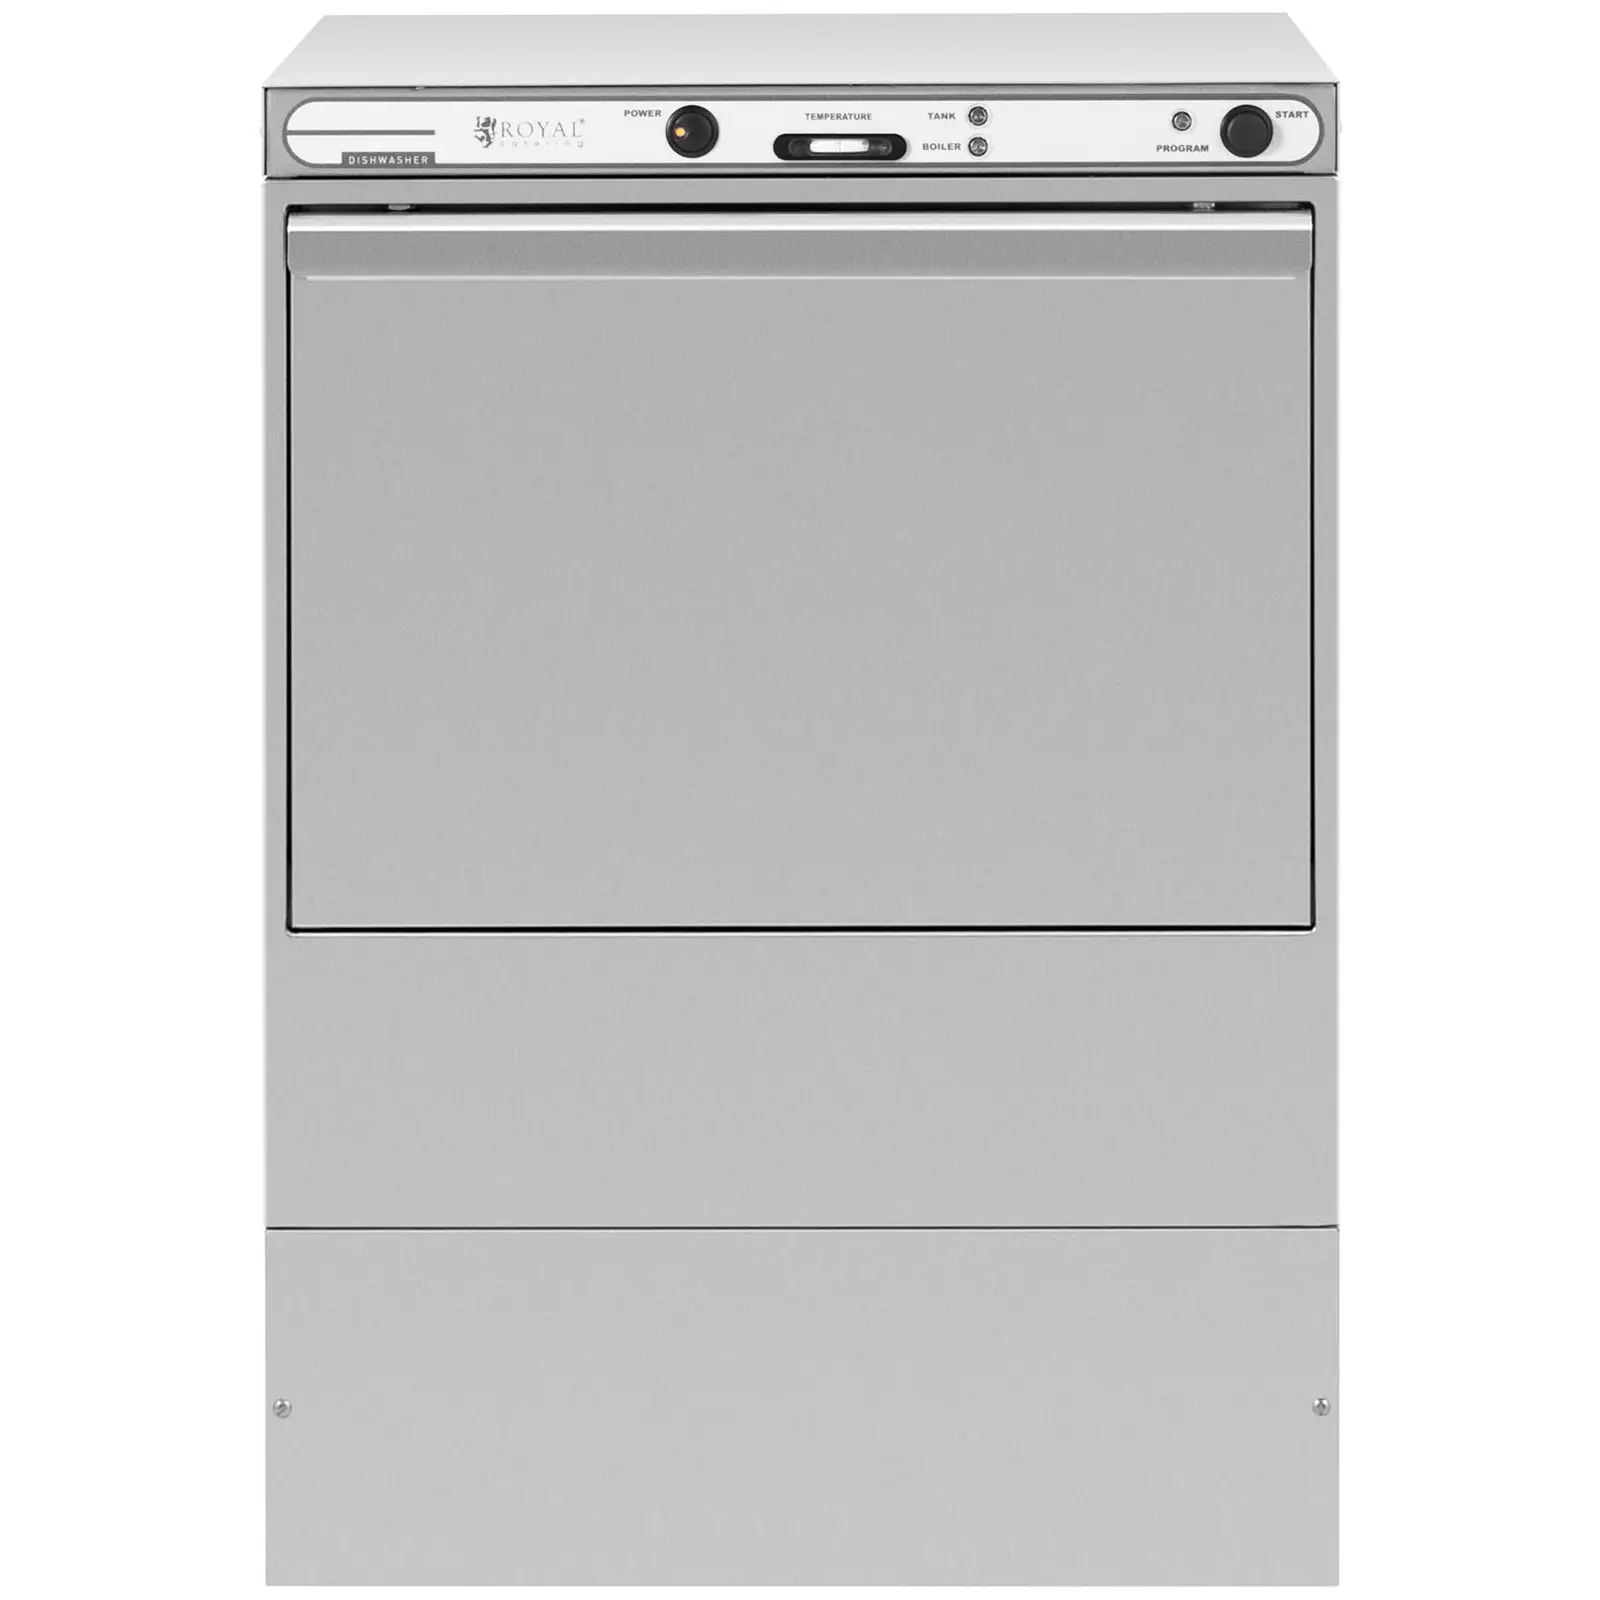 Máquina de lavar loiça - 6600 W - Royal Catering - de bancada